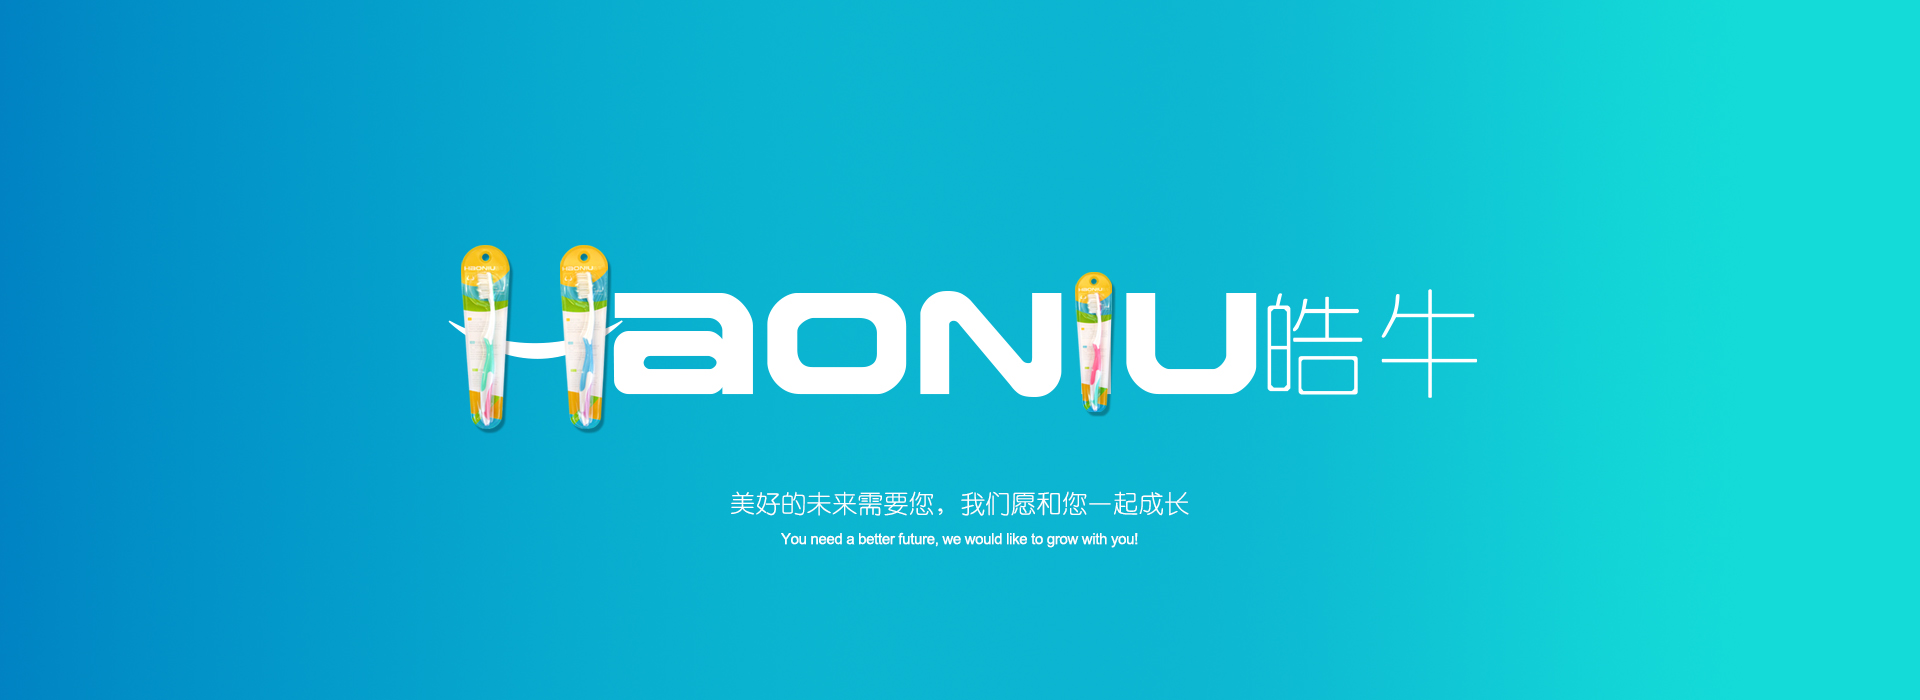 江苏牙刷厂家haoniu皓牛新产品 HD-274上市 欢迎招商示例图1